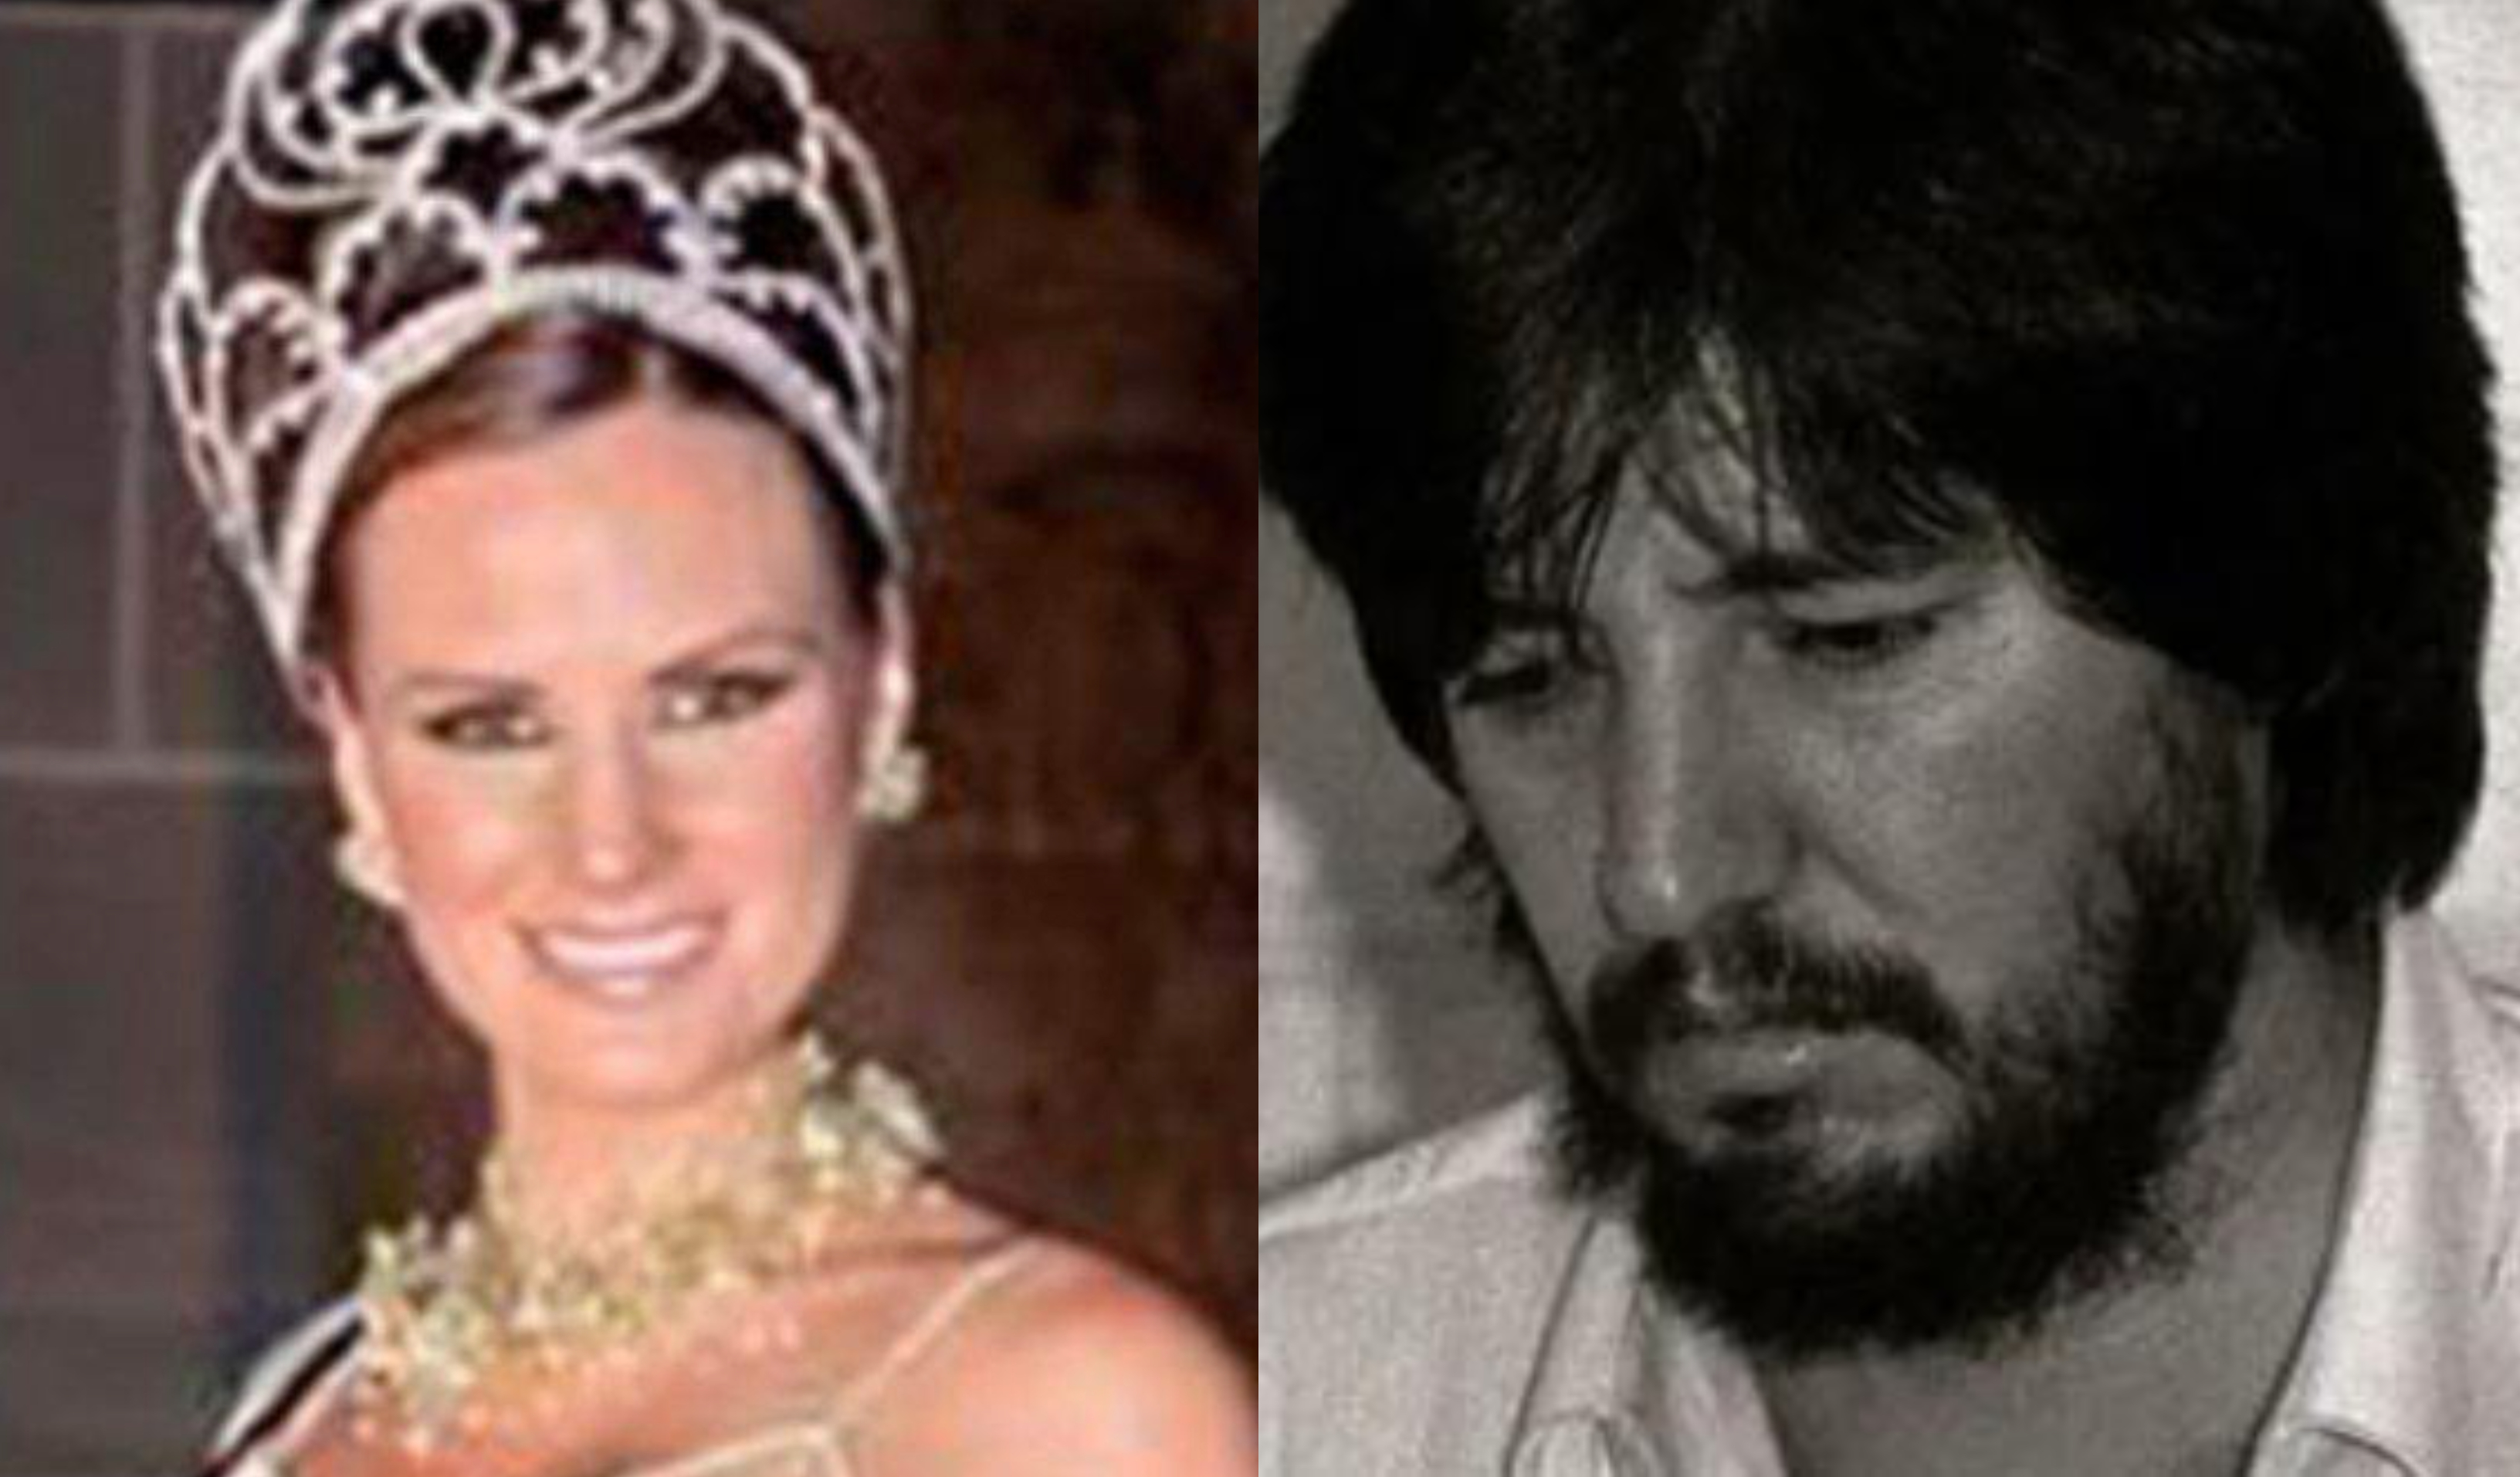 Amado Carrillo Fuentes ordenó el asesinato de la ex reina de belleza en 1997. (Foto Prensa Libre: El Heraldo y AFP)